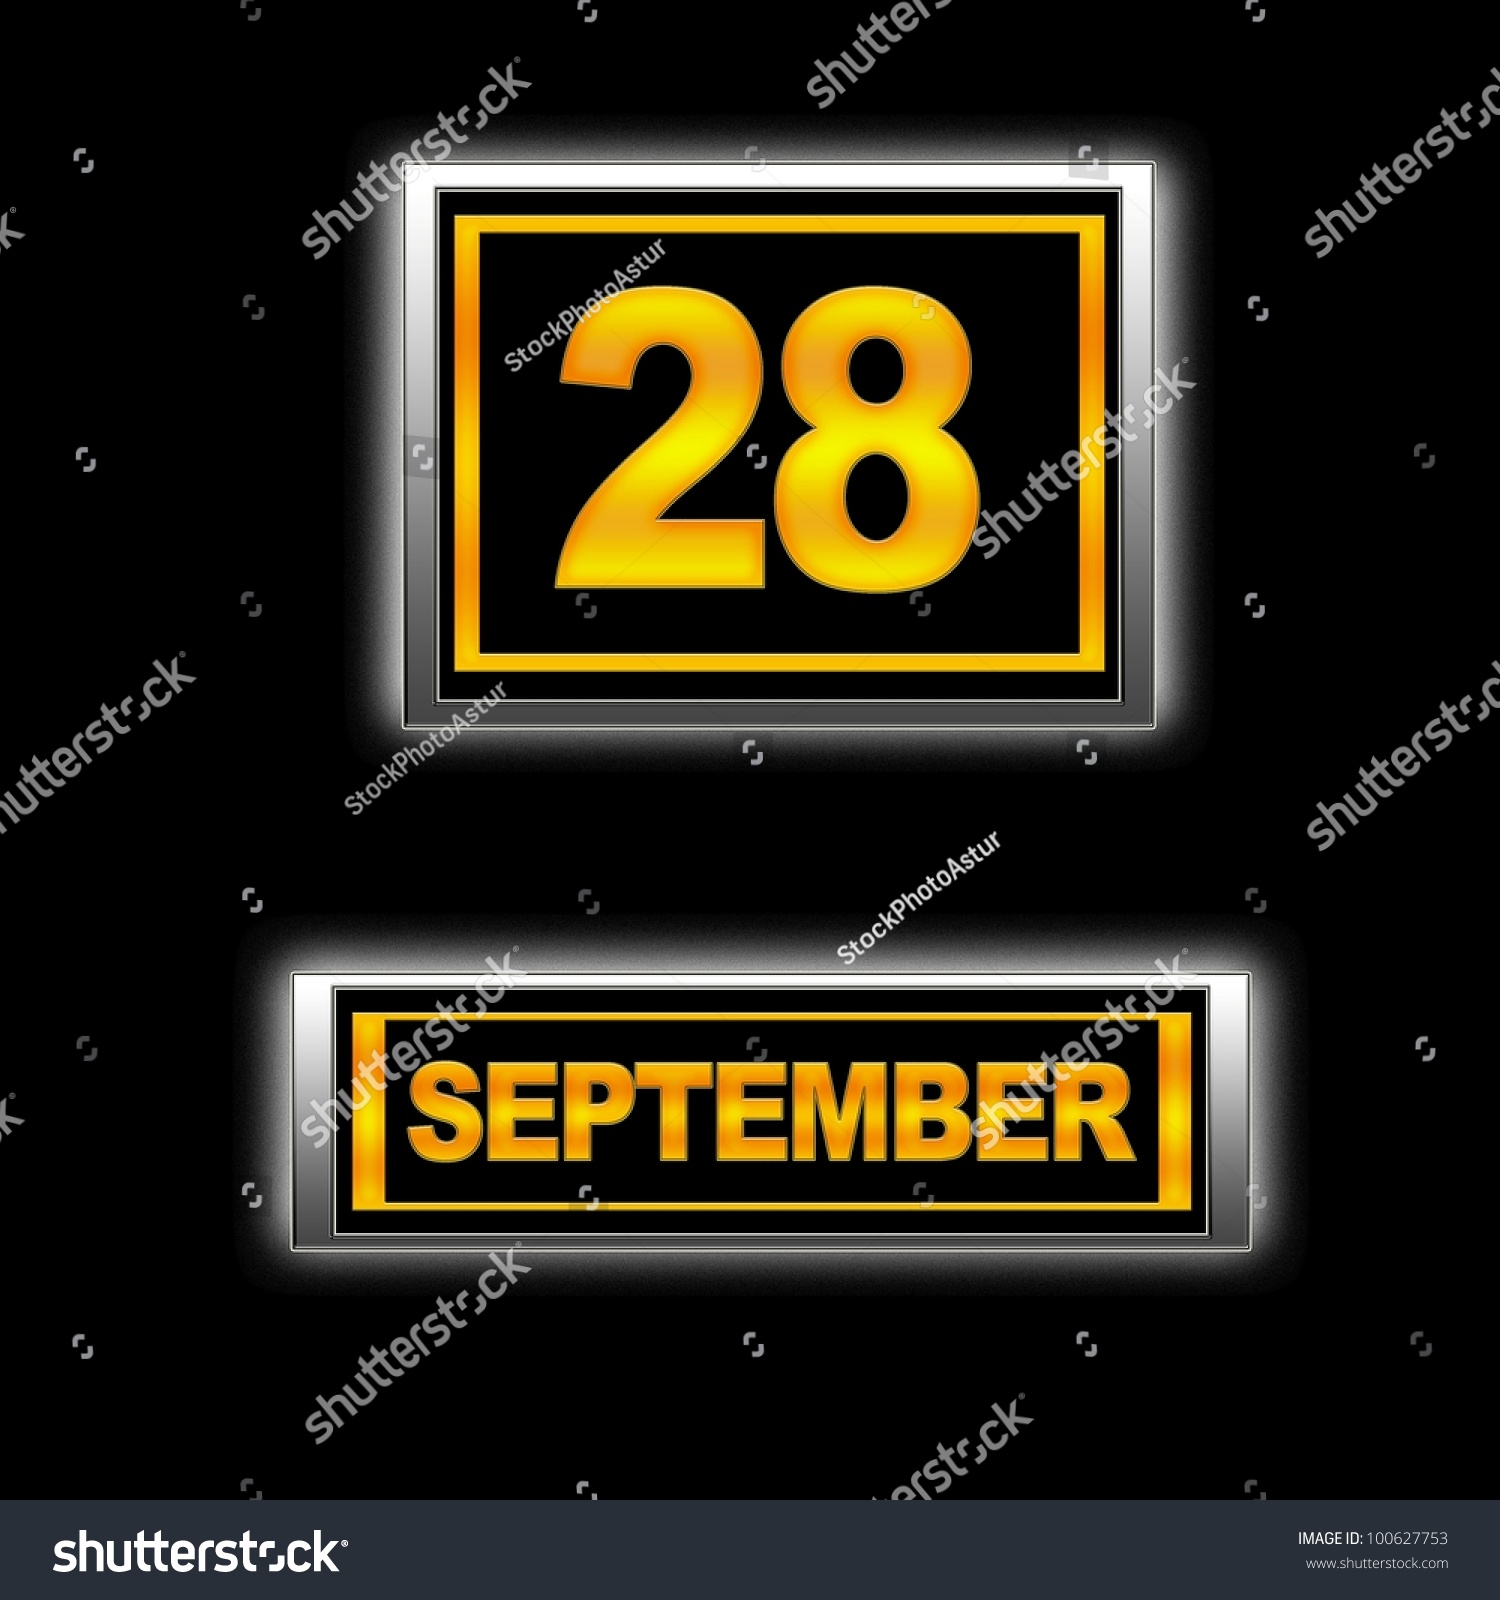 Illustration With Calendar, September 28. 100627753 Shutterstock